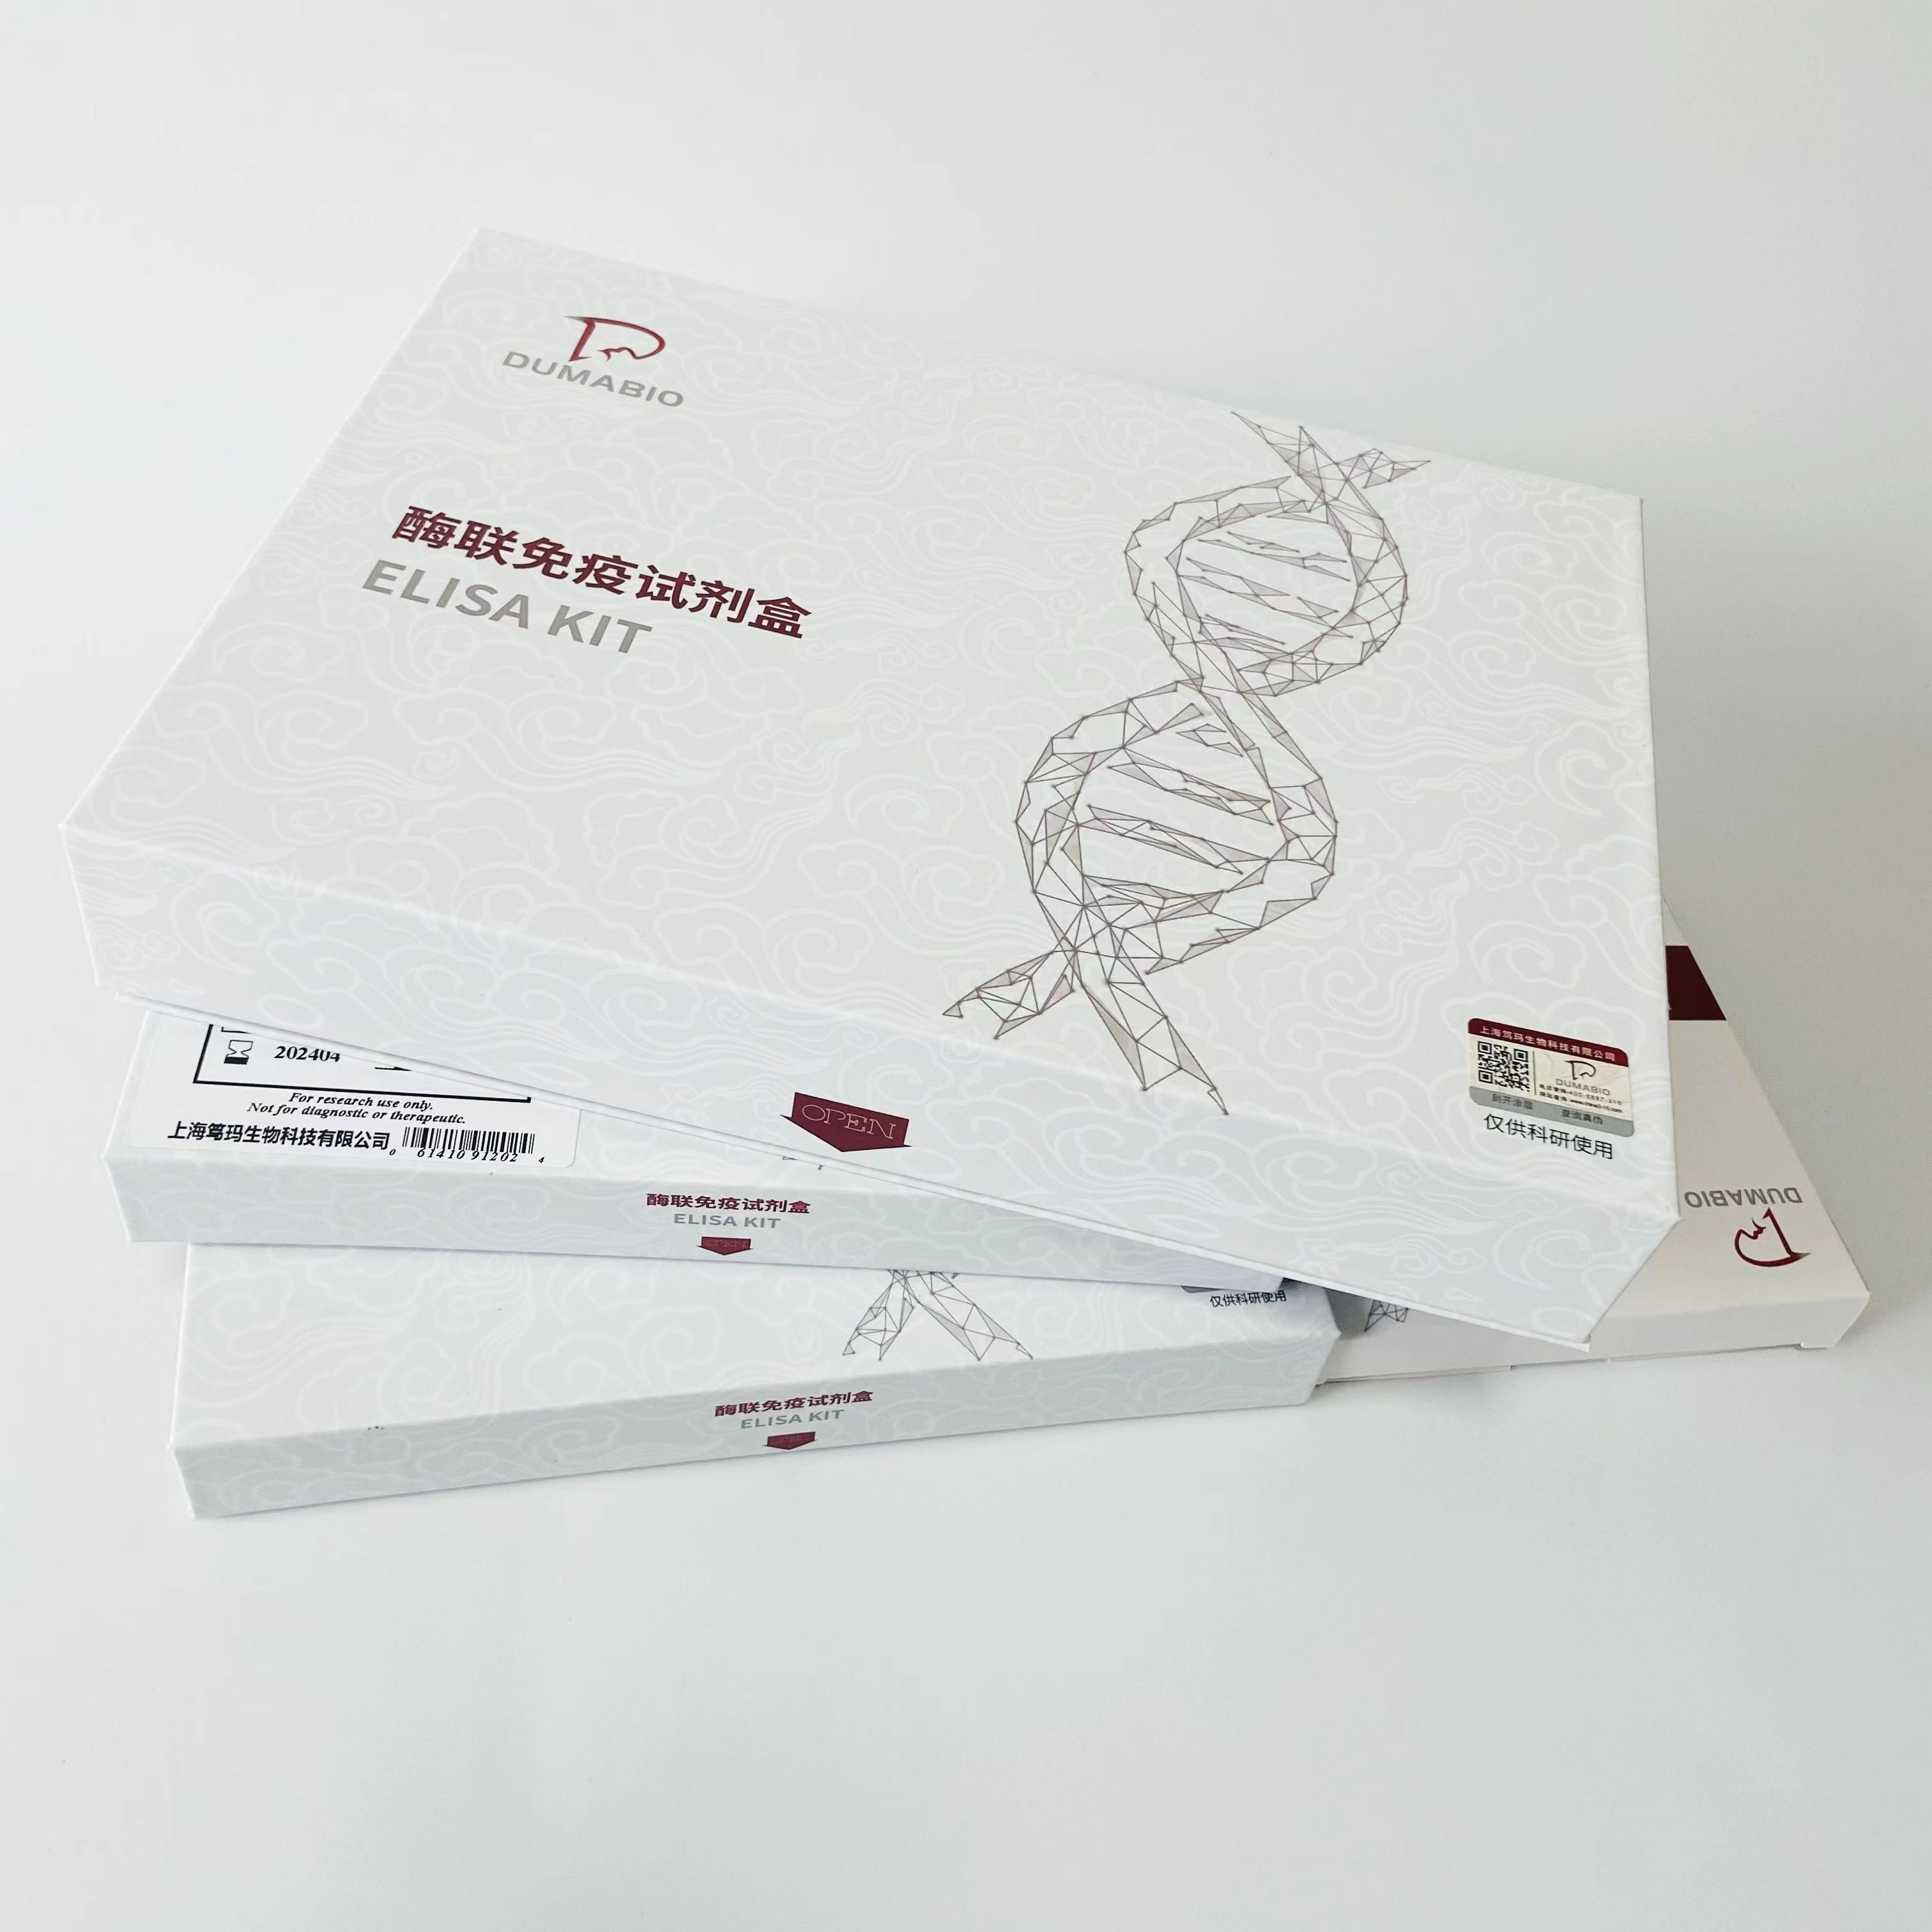 人抗促甲状腺素受体抗体(TRAb) ELISA试剂盒